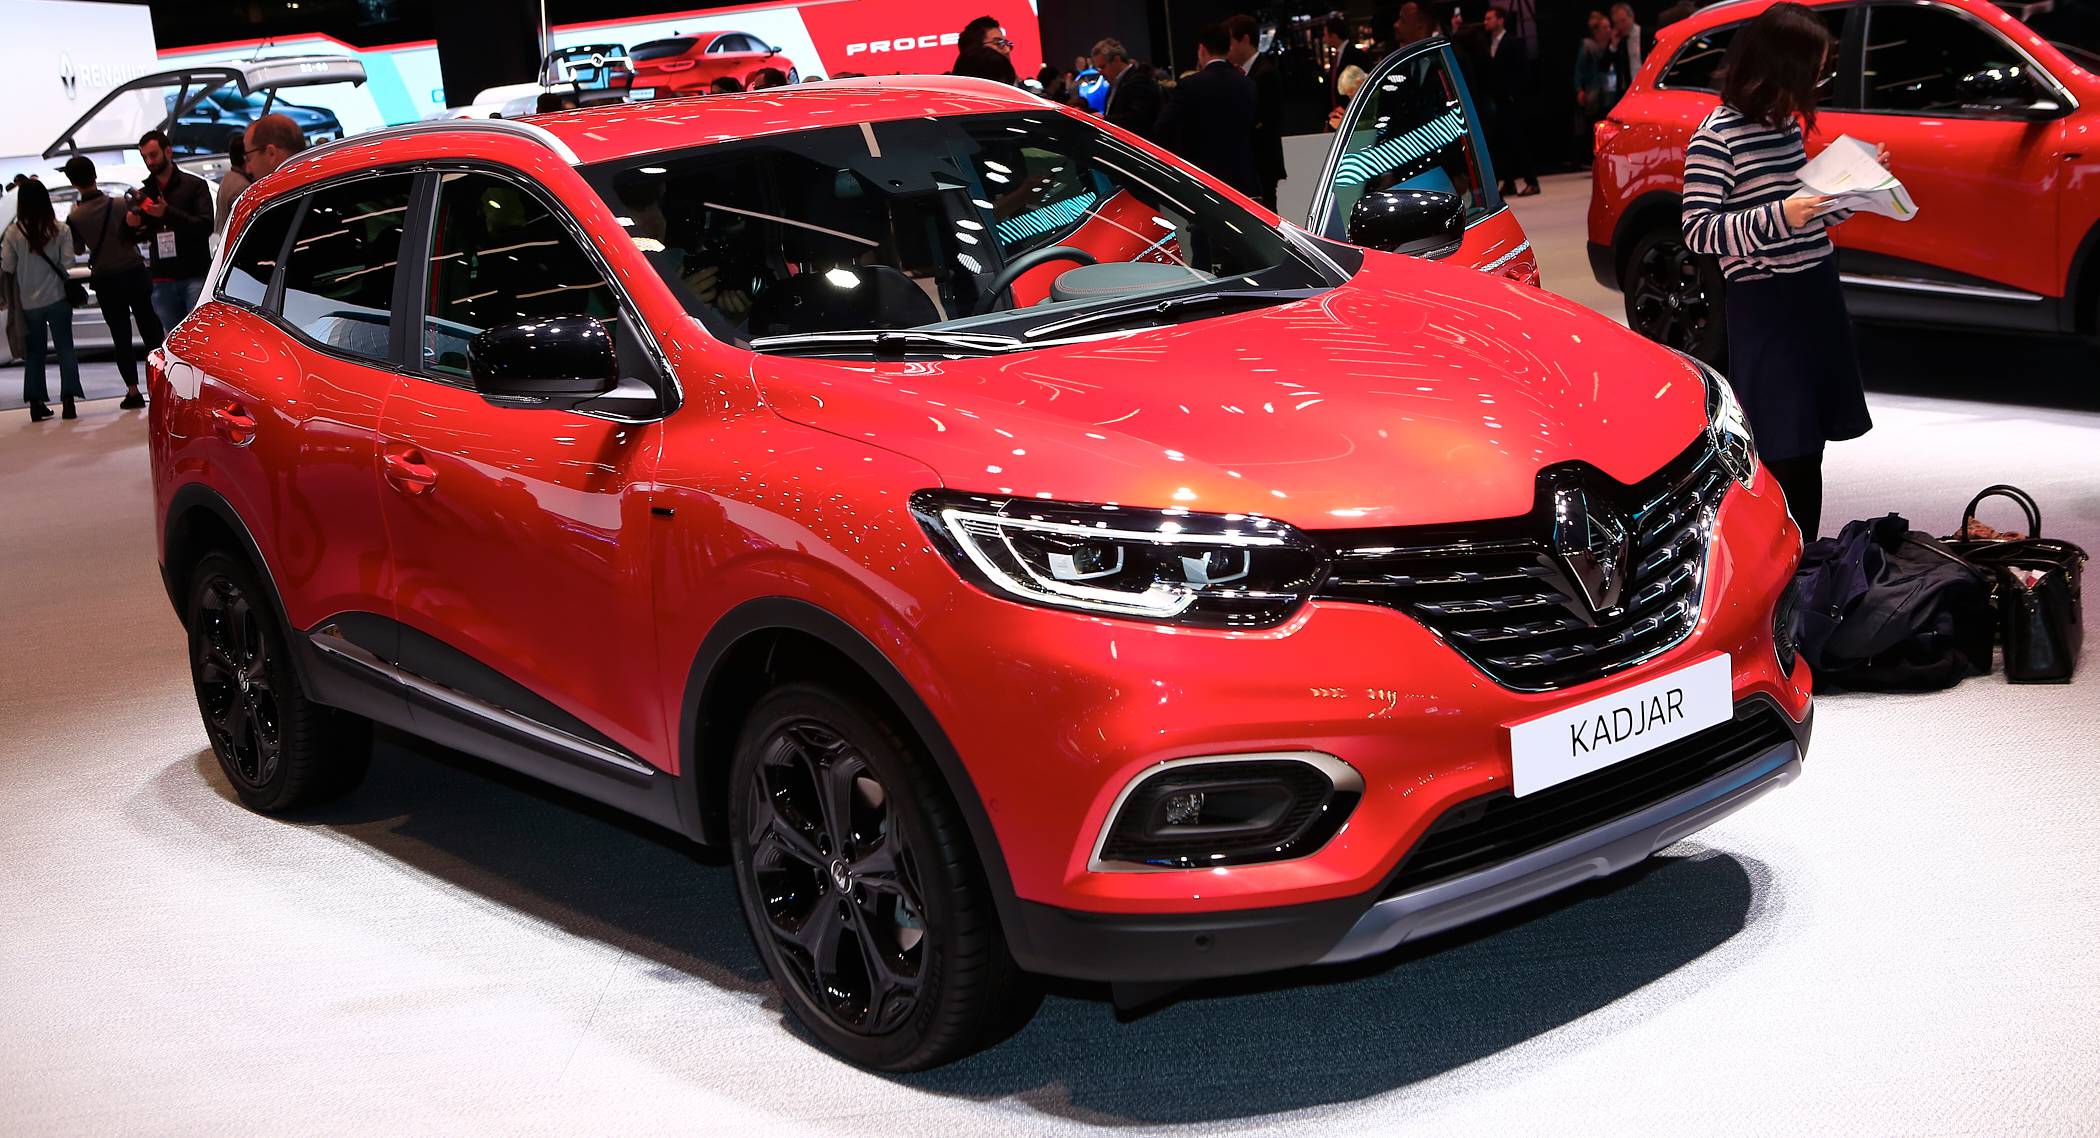 2019 Renault Kadjar Brings Refined Looks, New Engines To Paris